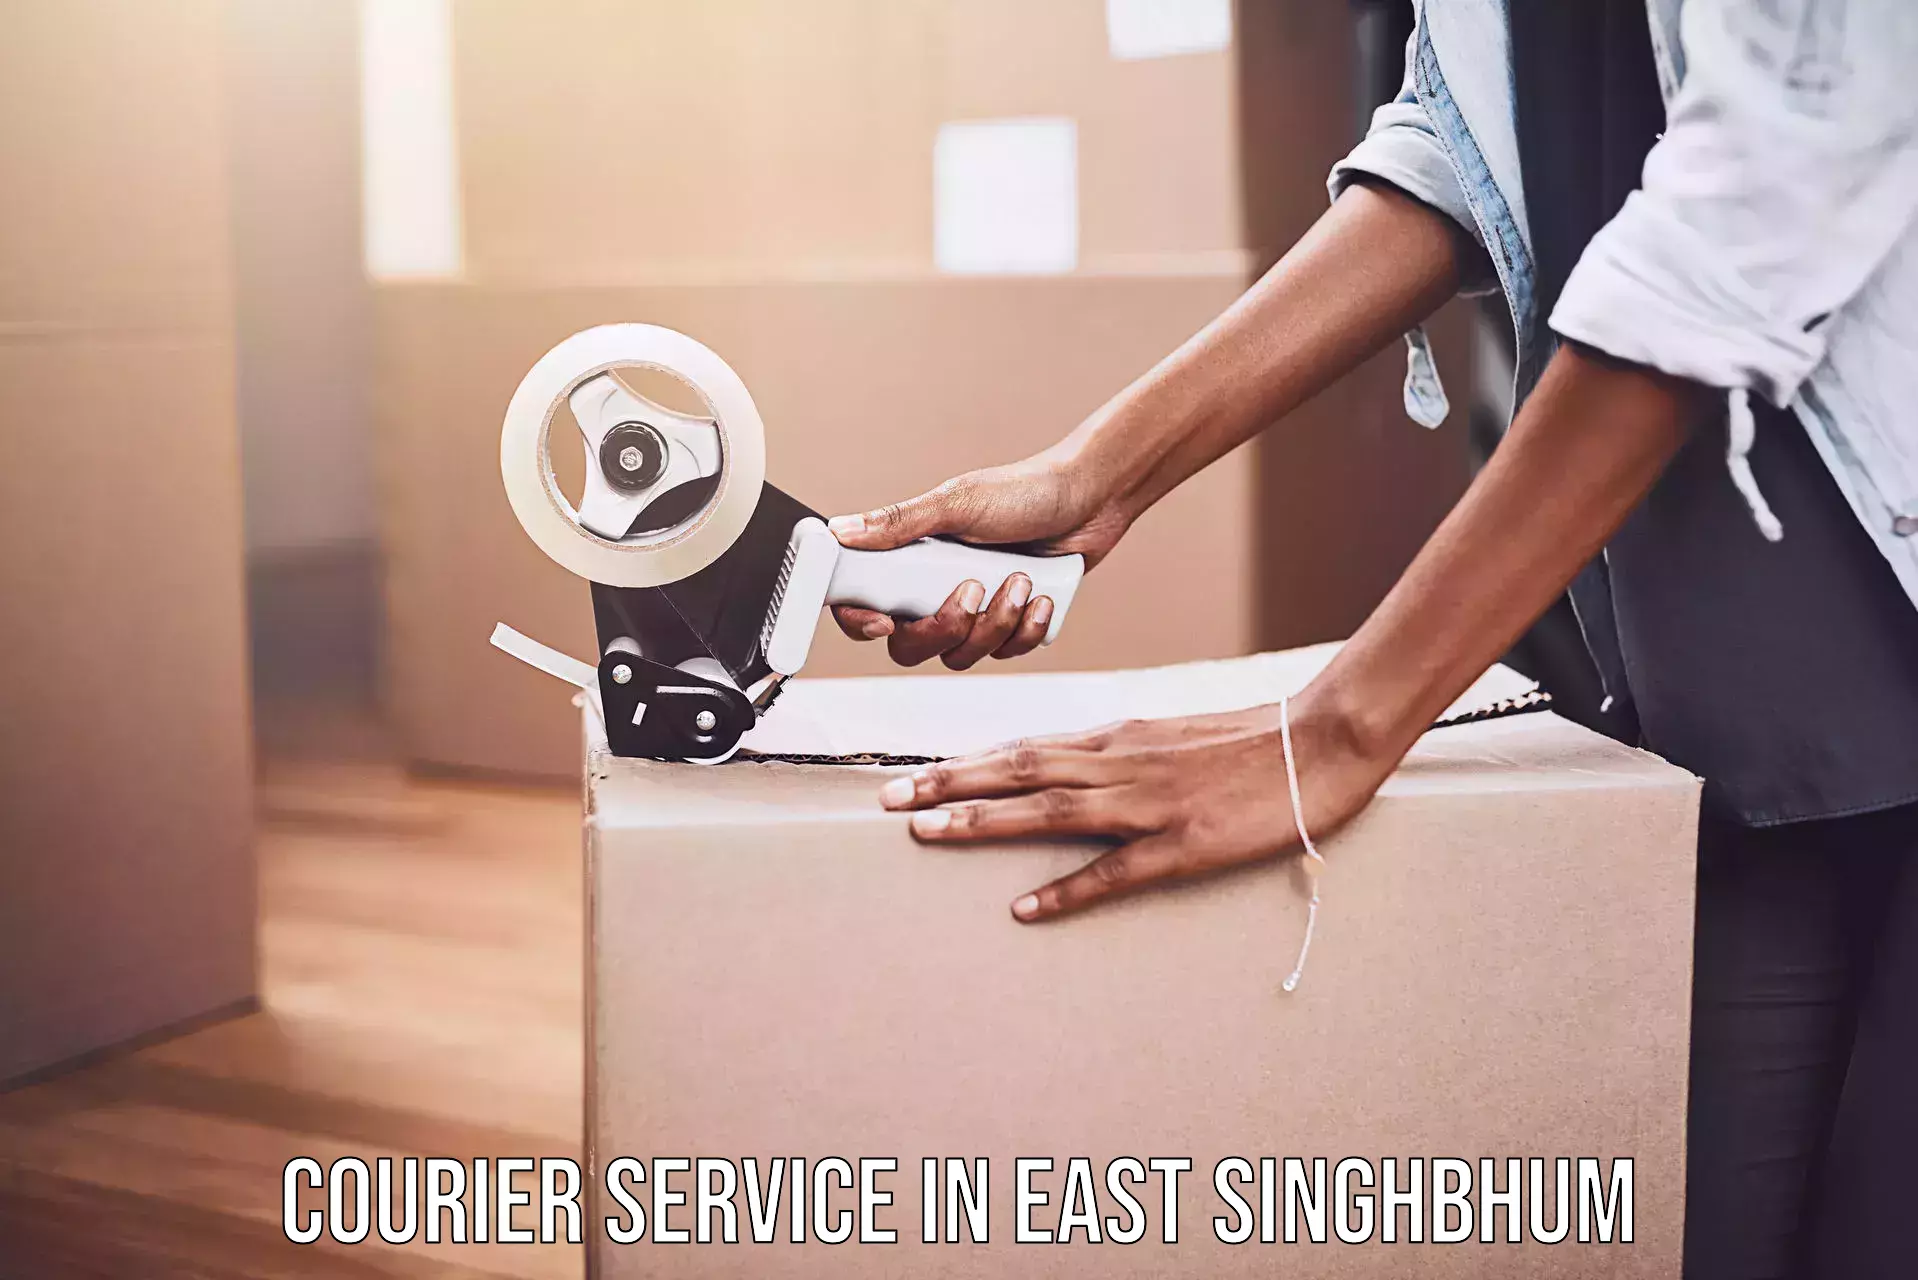 High-priority parcel service in East Singhbhum